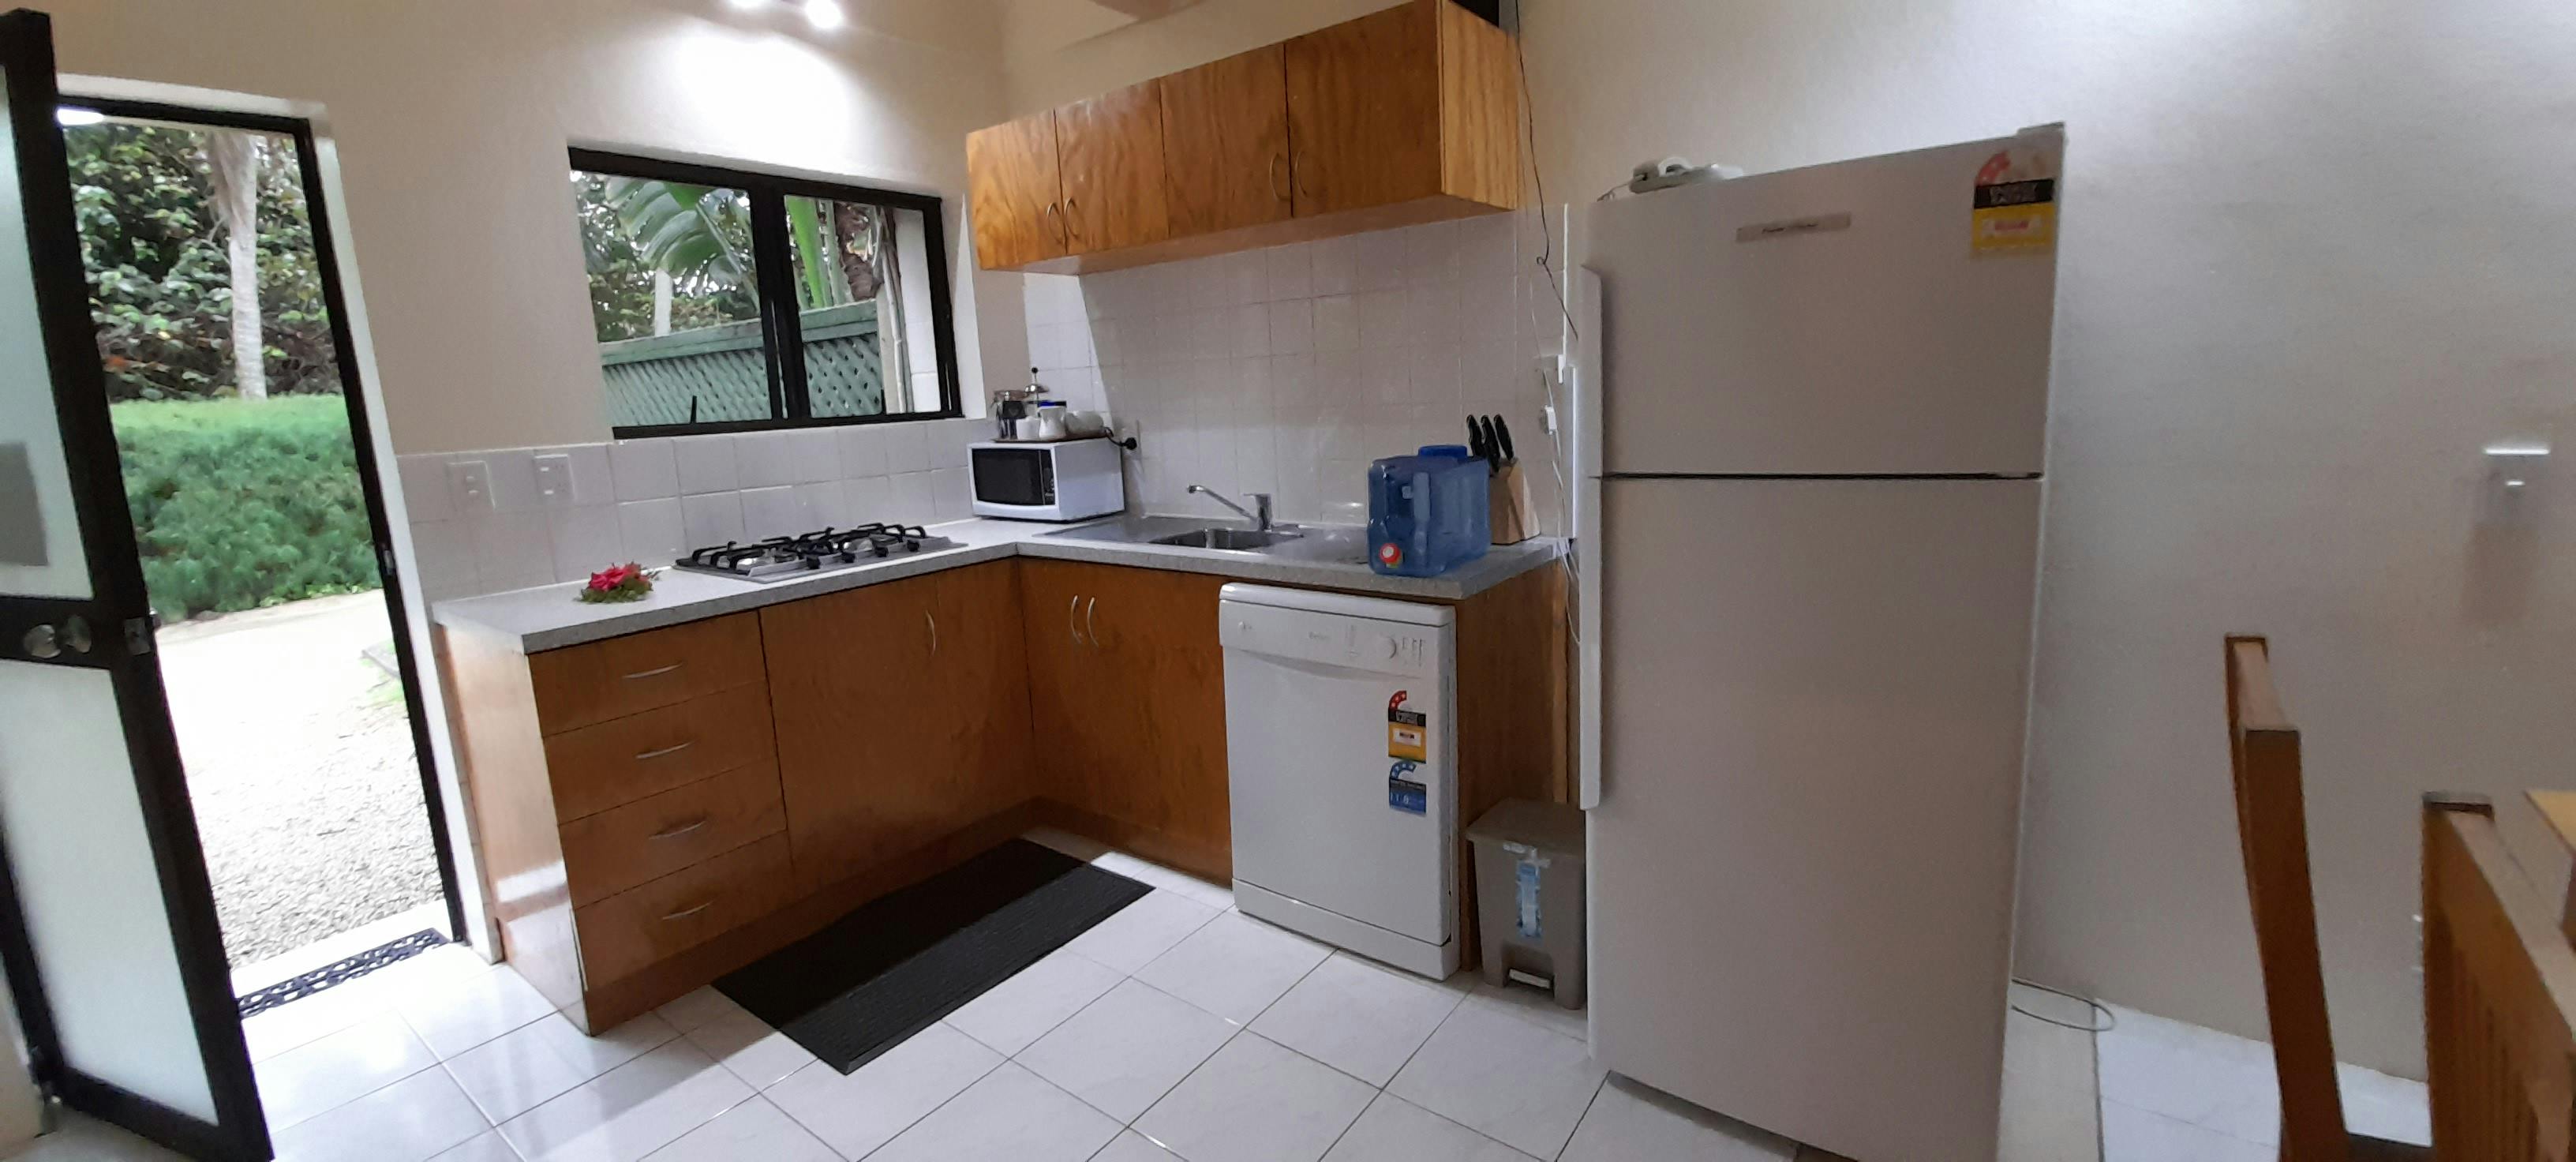 3 bedroom kitchen with Fridge/freezer, dishwasher, 4 burner stove, drinking bottle.